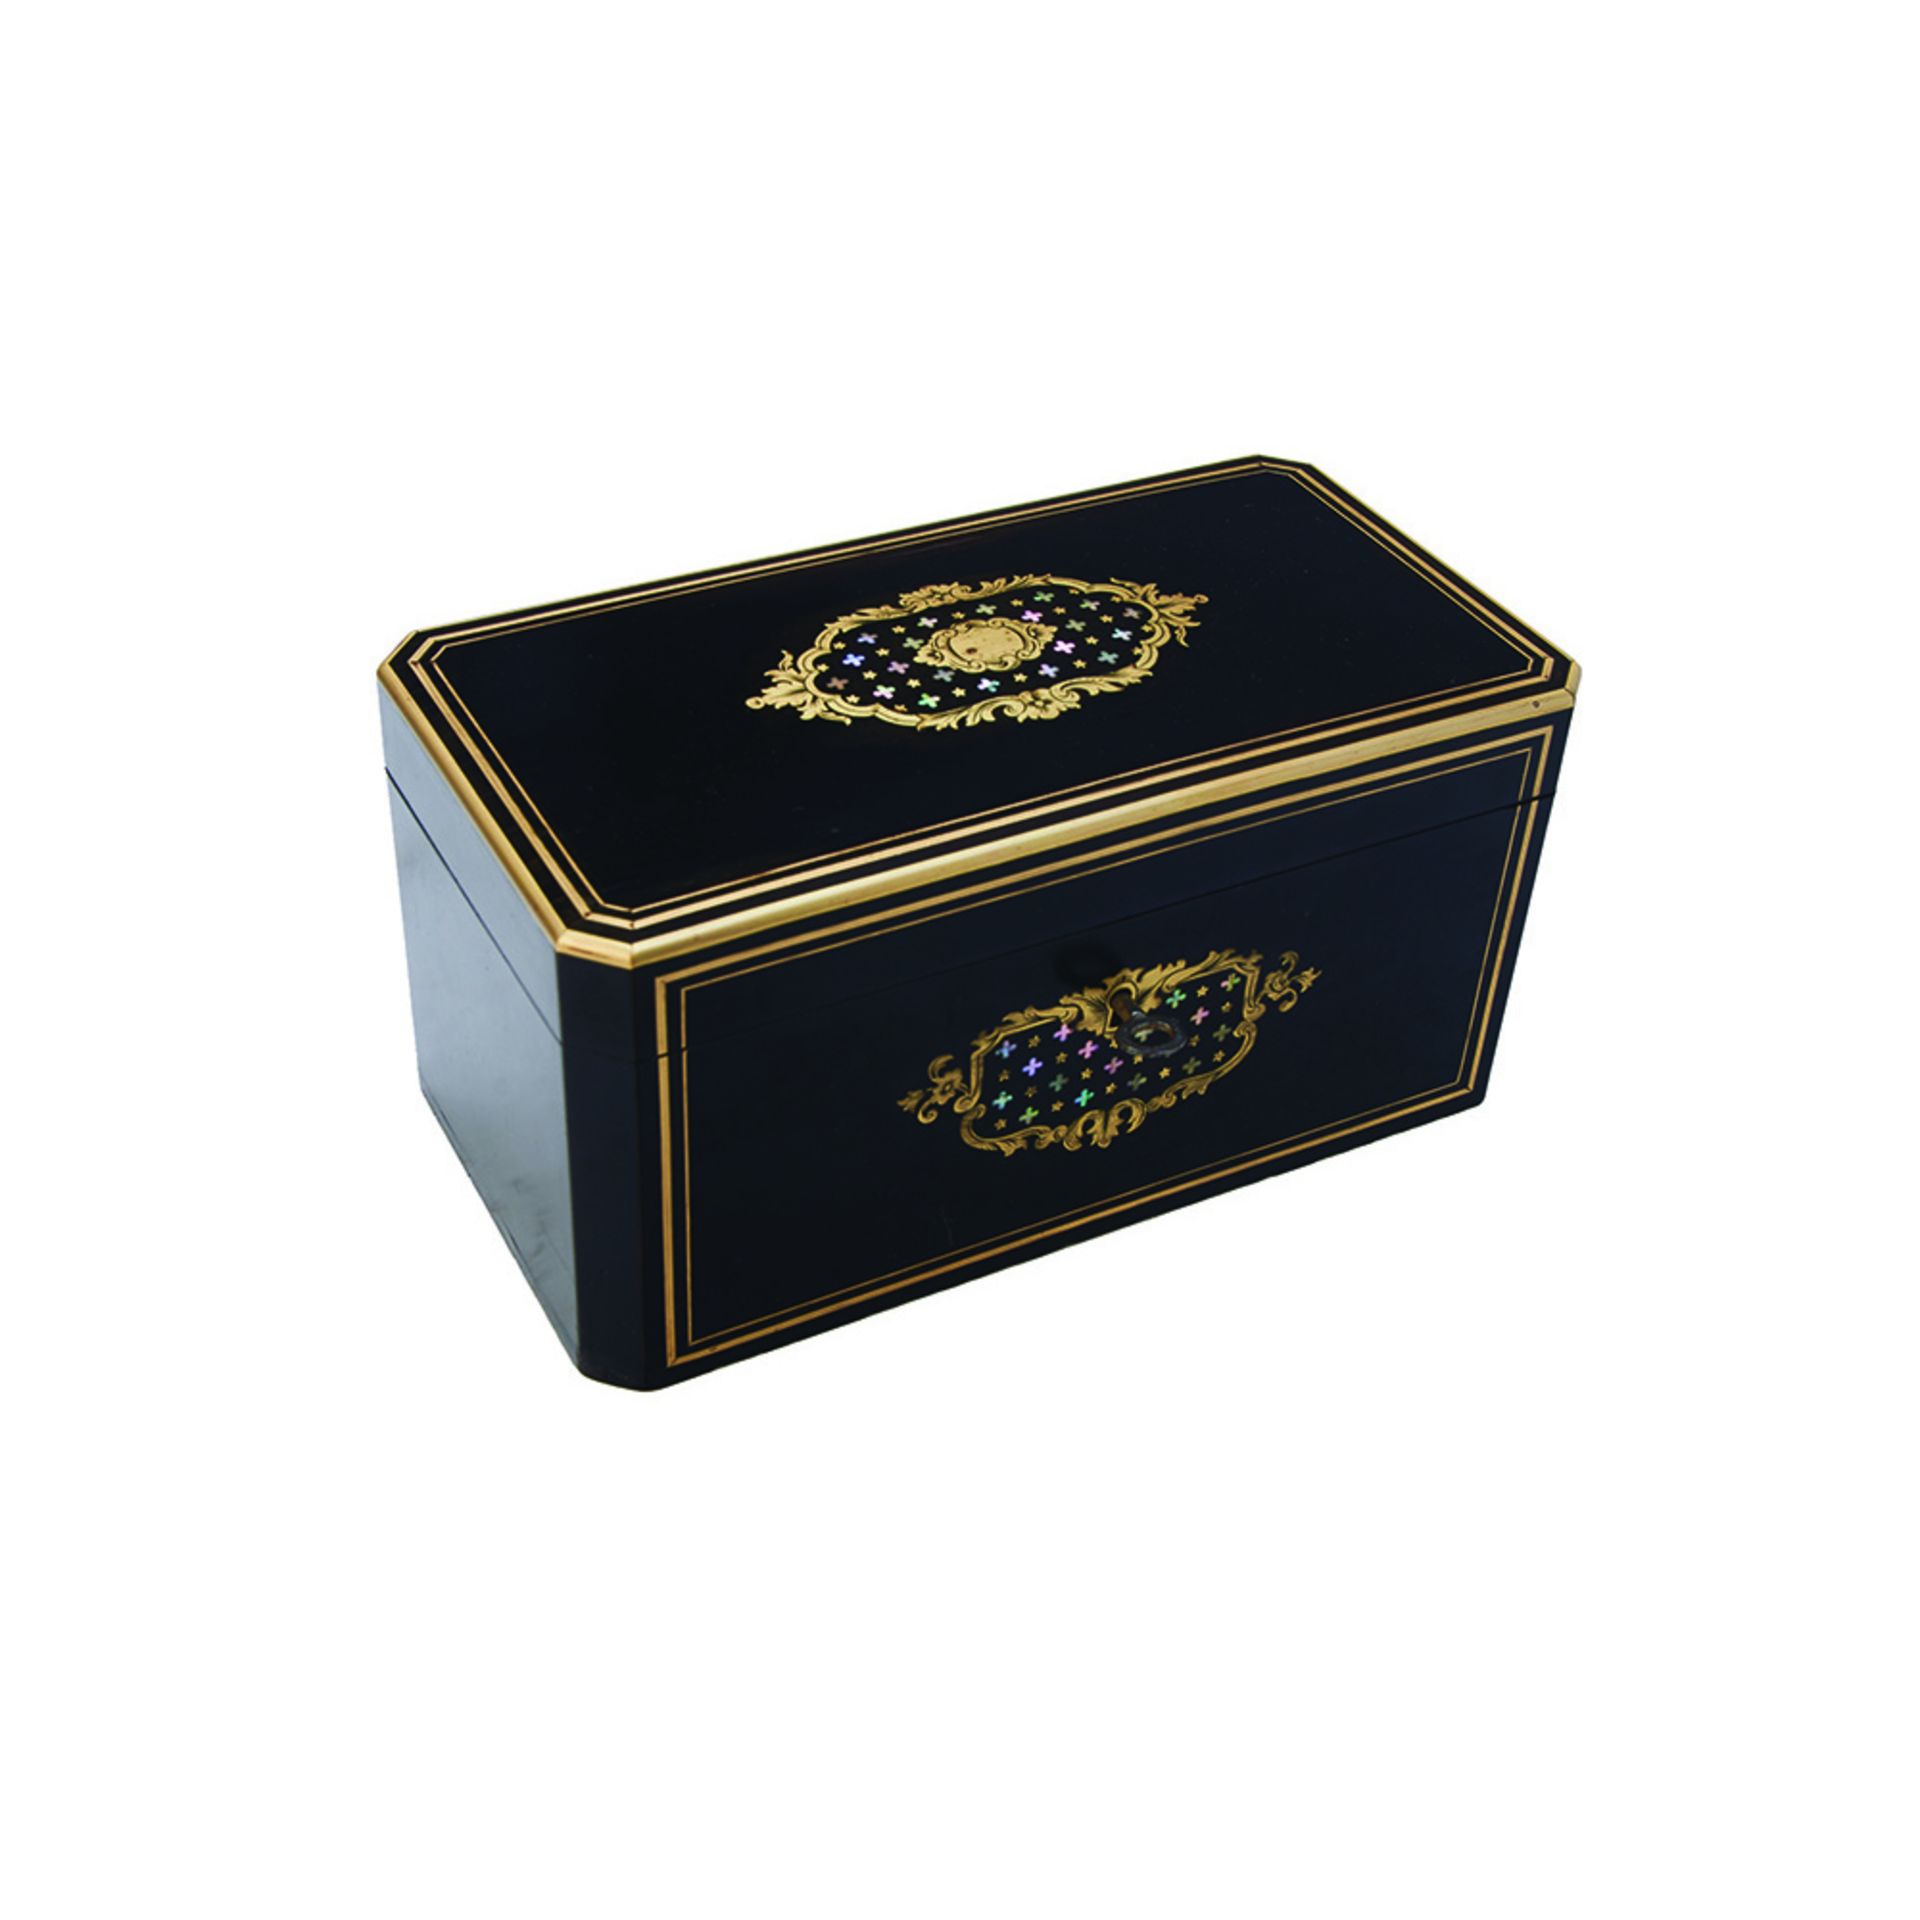 Caja de té francesa Napoleón III en madera ebonizada con marquetería en latón y madreperla, fles.